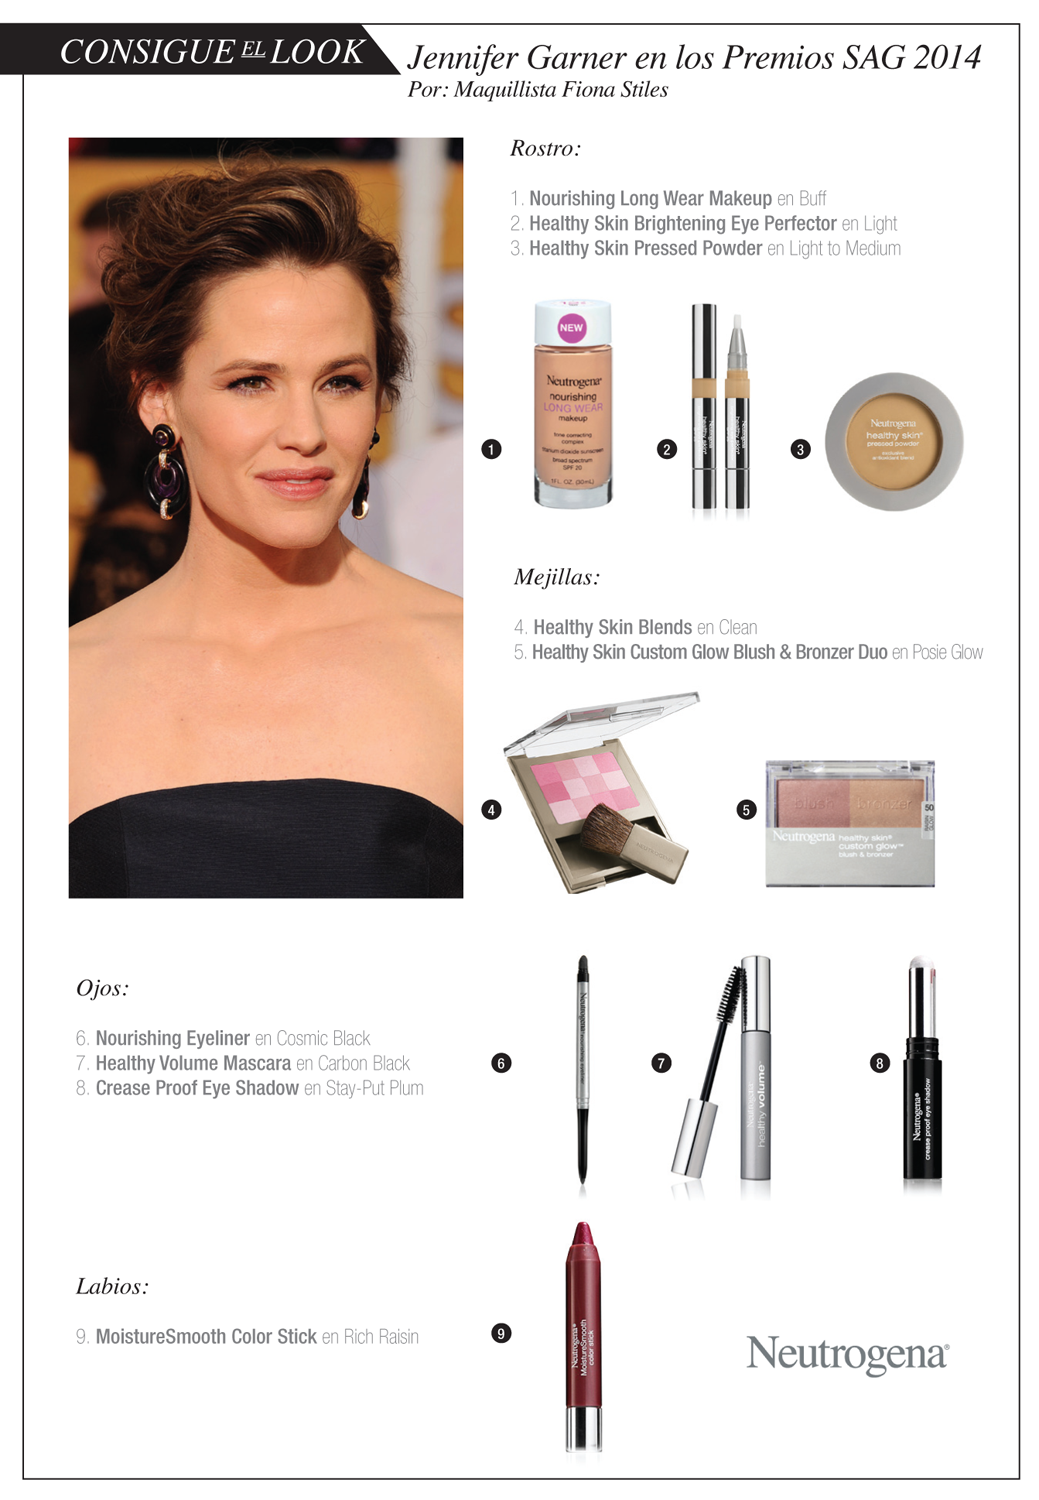 Tips Holísticos: Consigue el Look de Jennifer Garner en los Premios SAG 2014 #NTGbeautifulInsideout